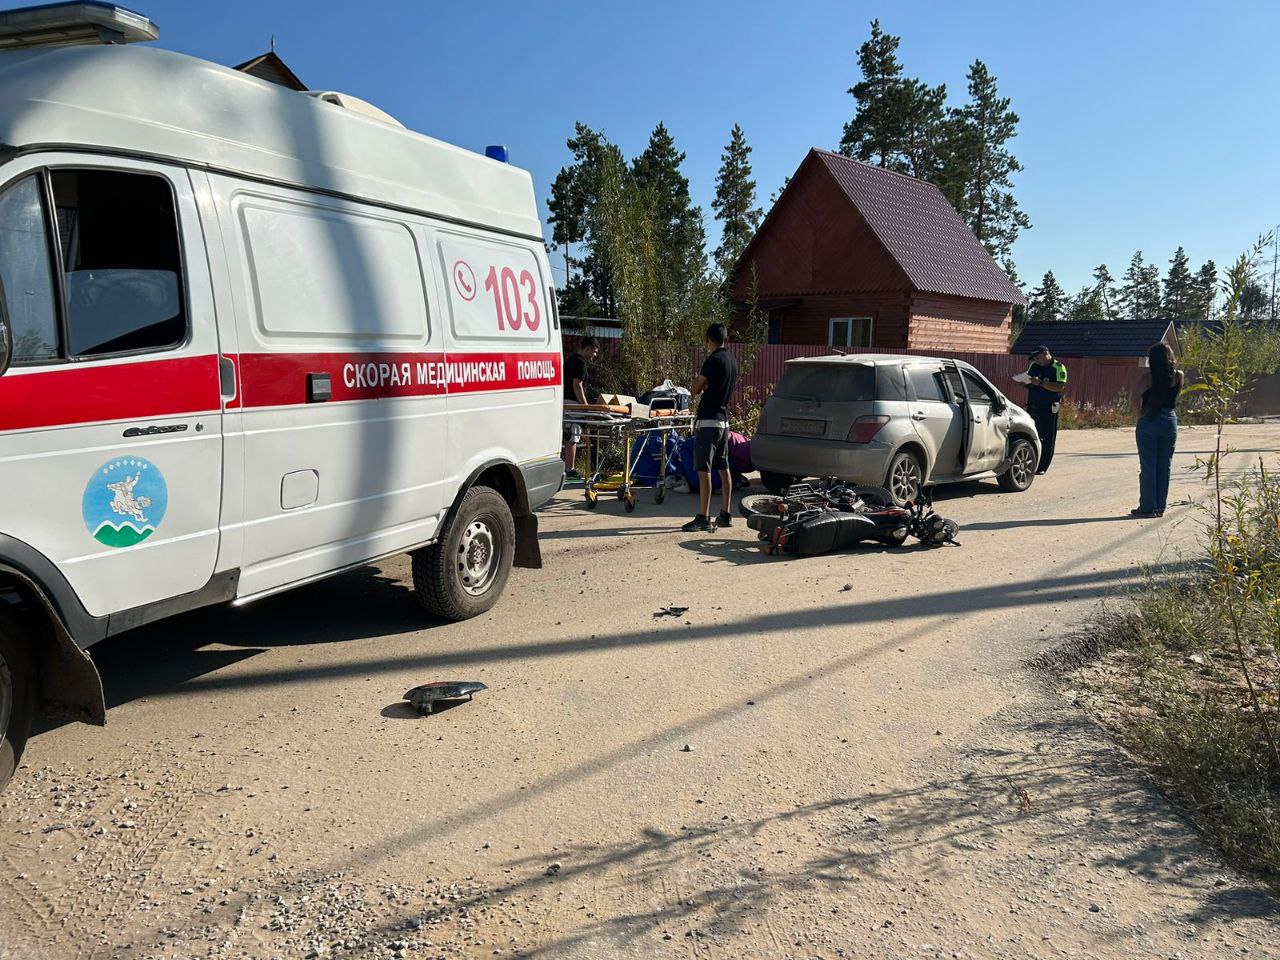 Несовершеннолетний мотоциклист пострадал в ДТП в Мегино-Кангаласском районе Якутии